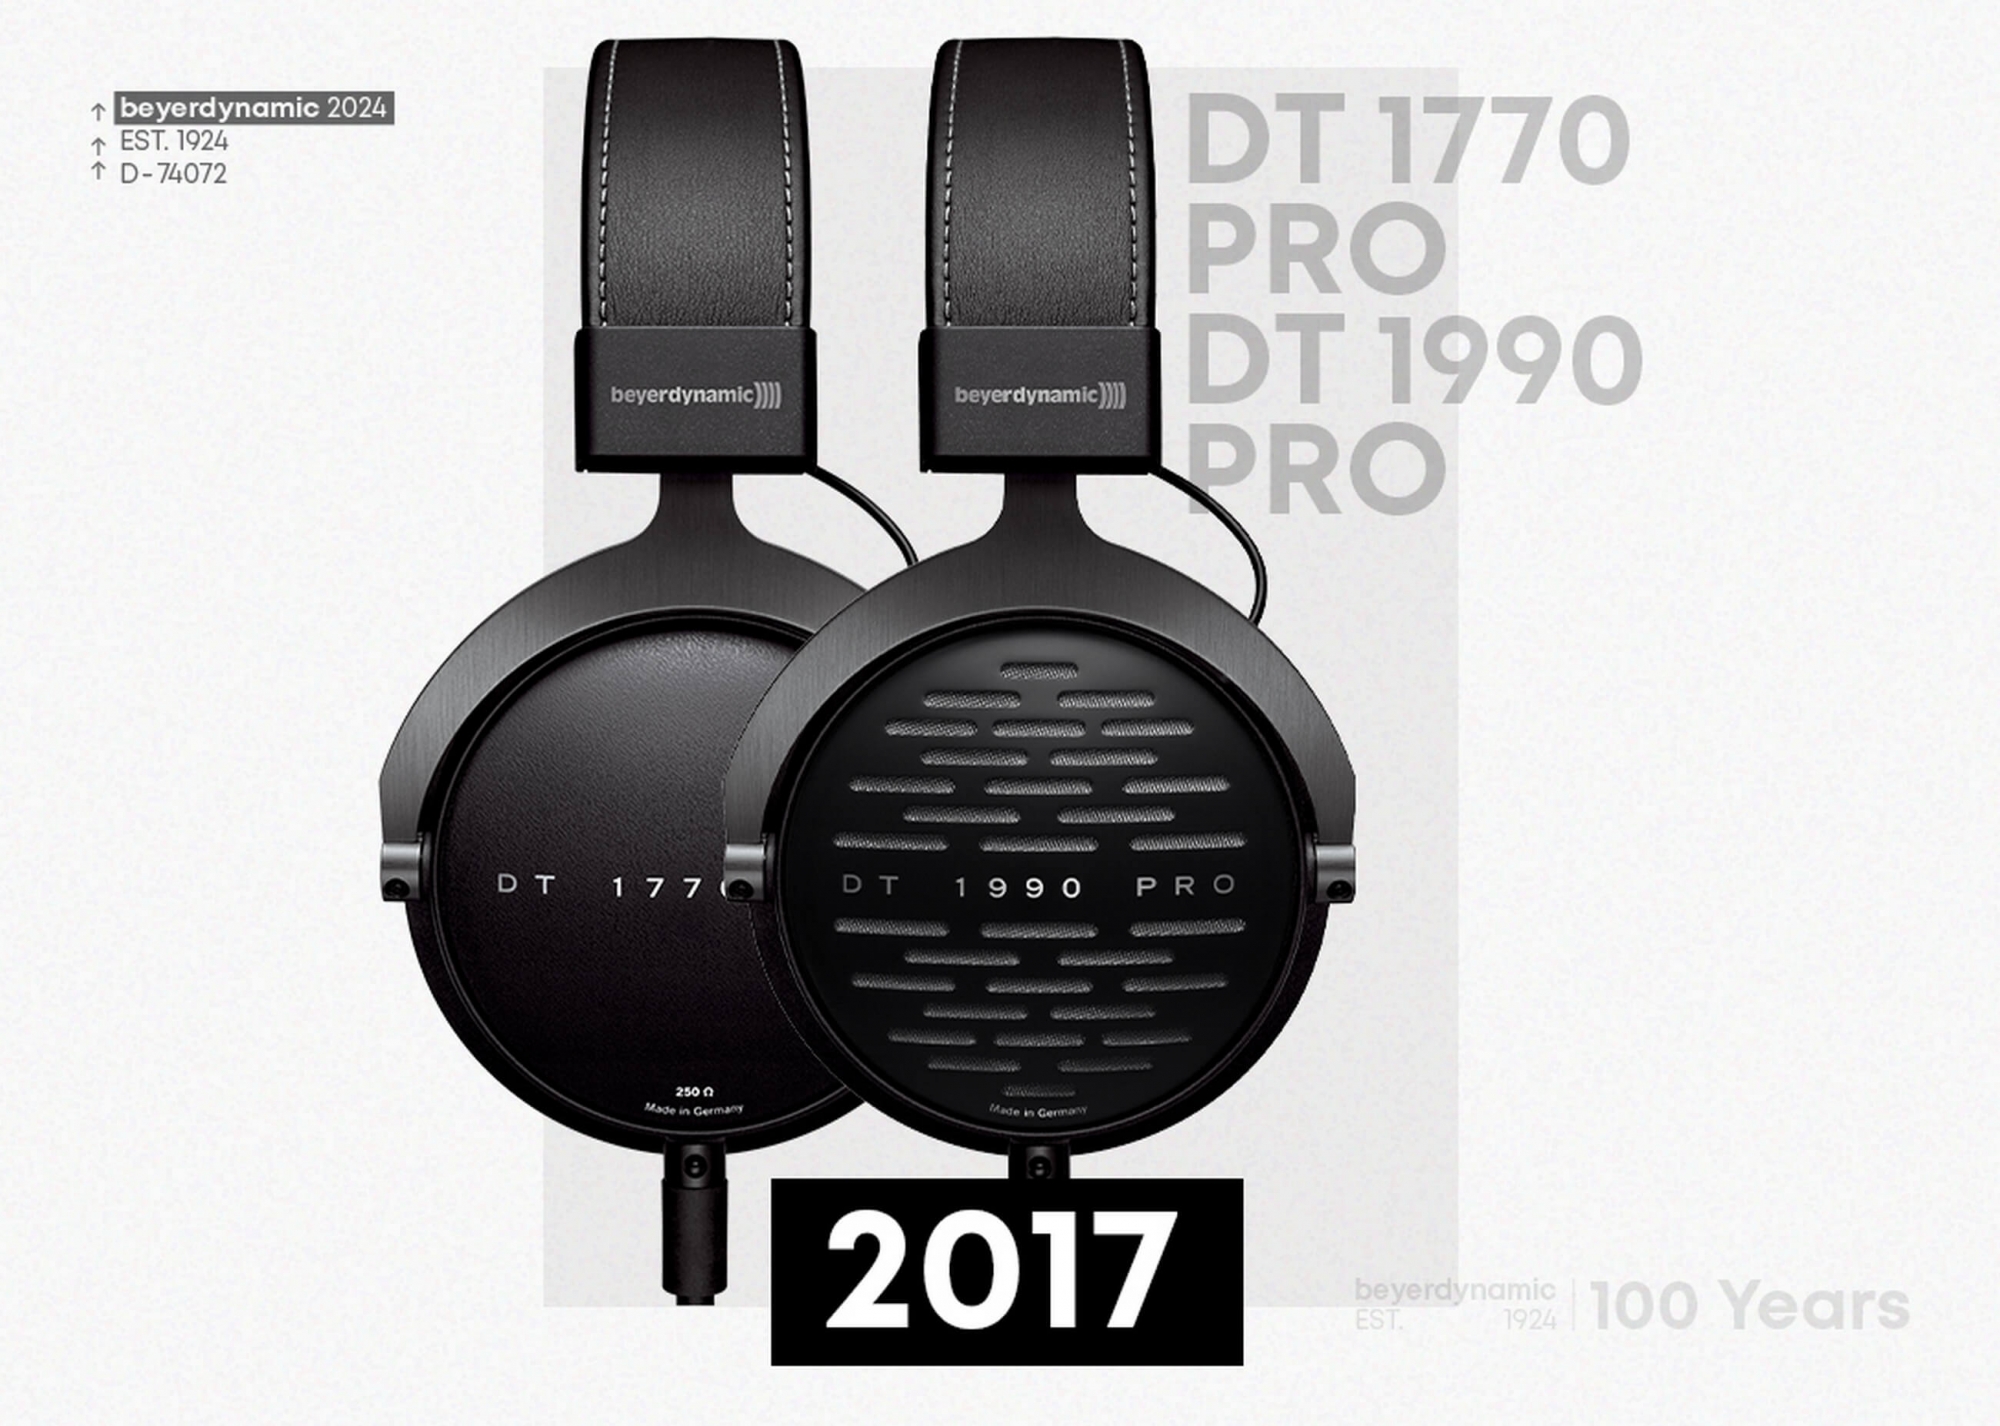 Beyerdynamic DT 1770 PRO és DT 1990 PRO fejhallgatók 2017-ben